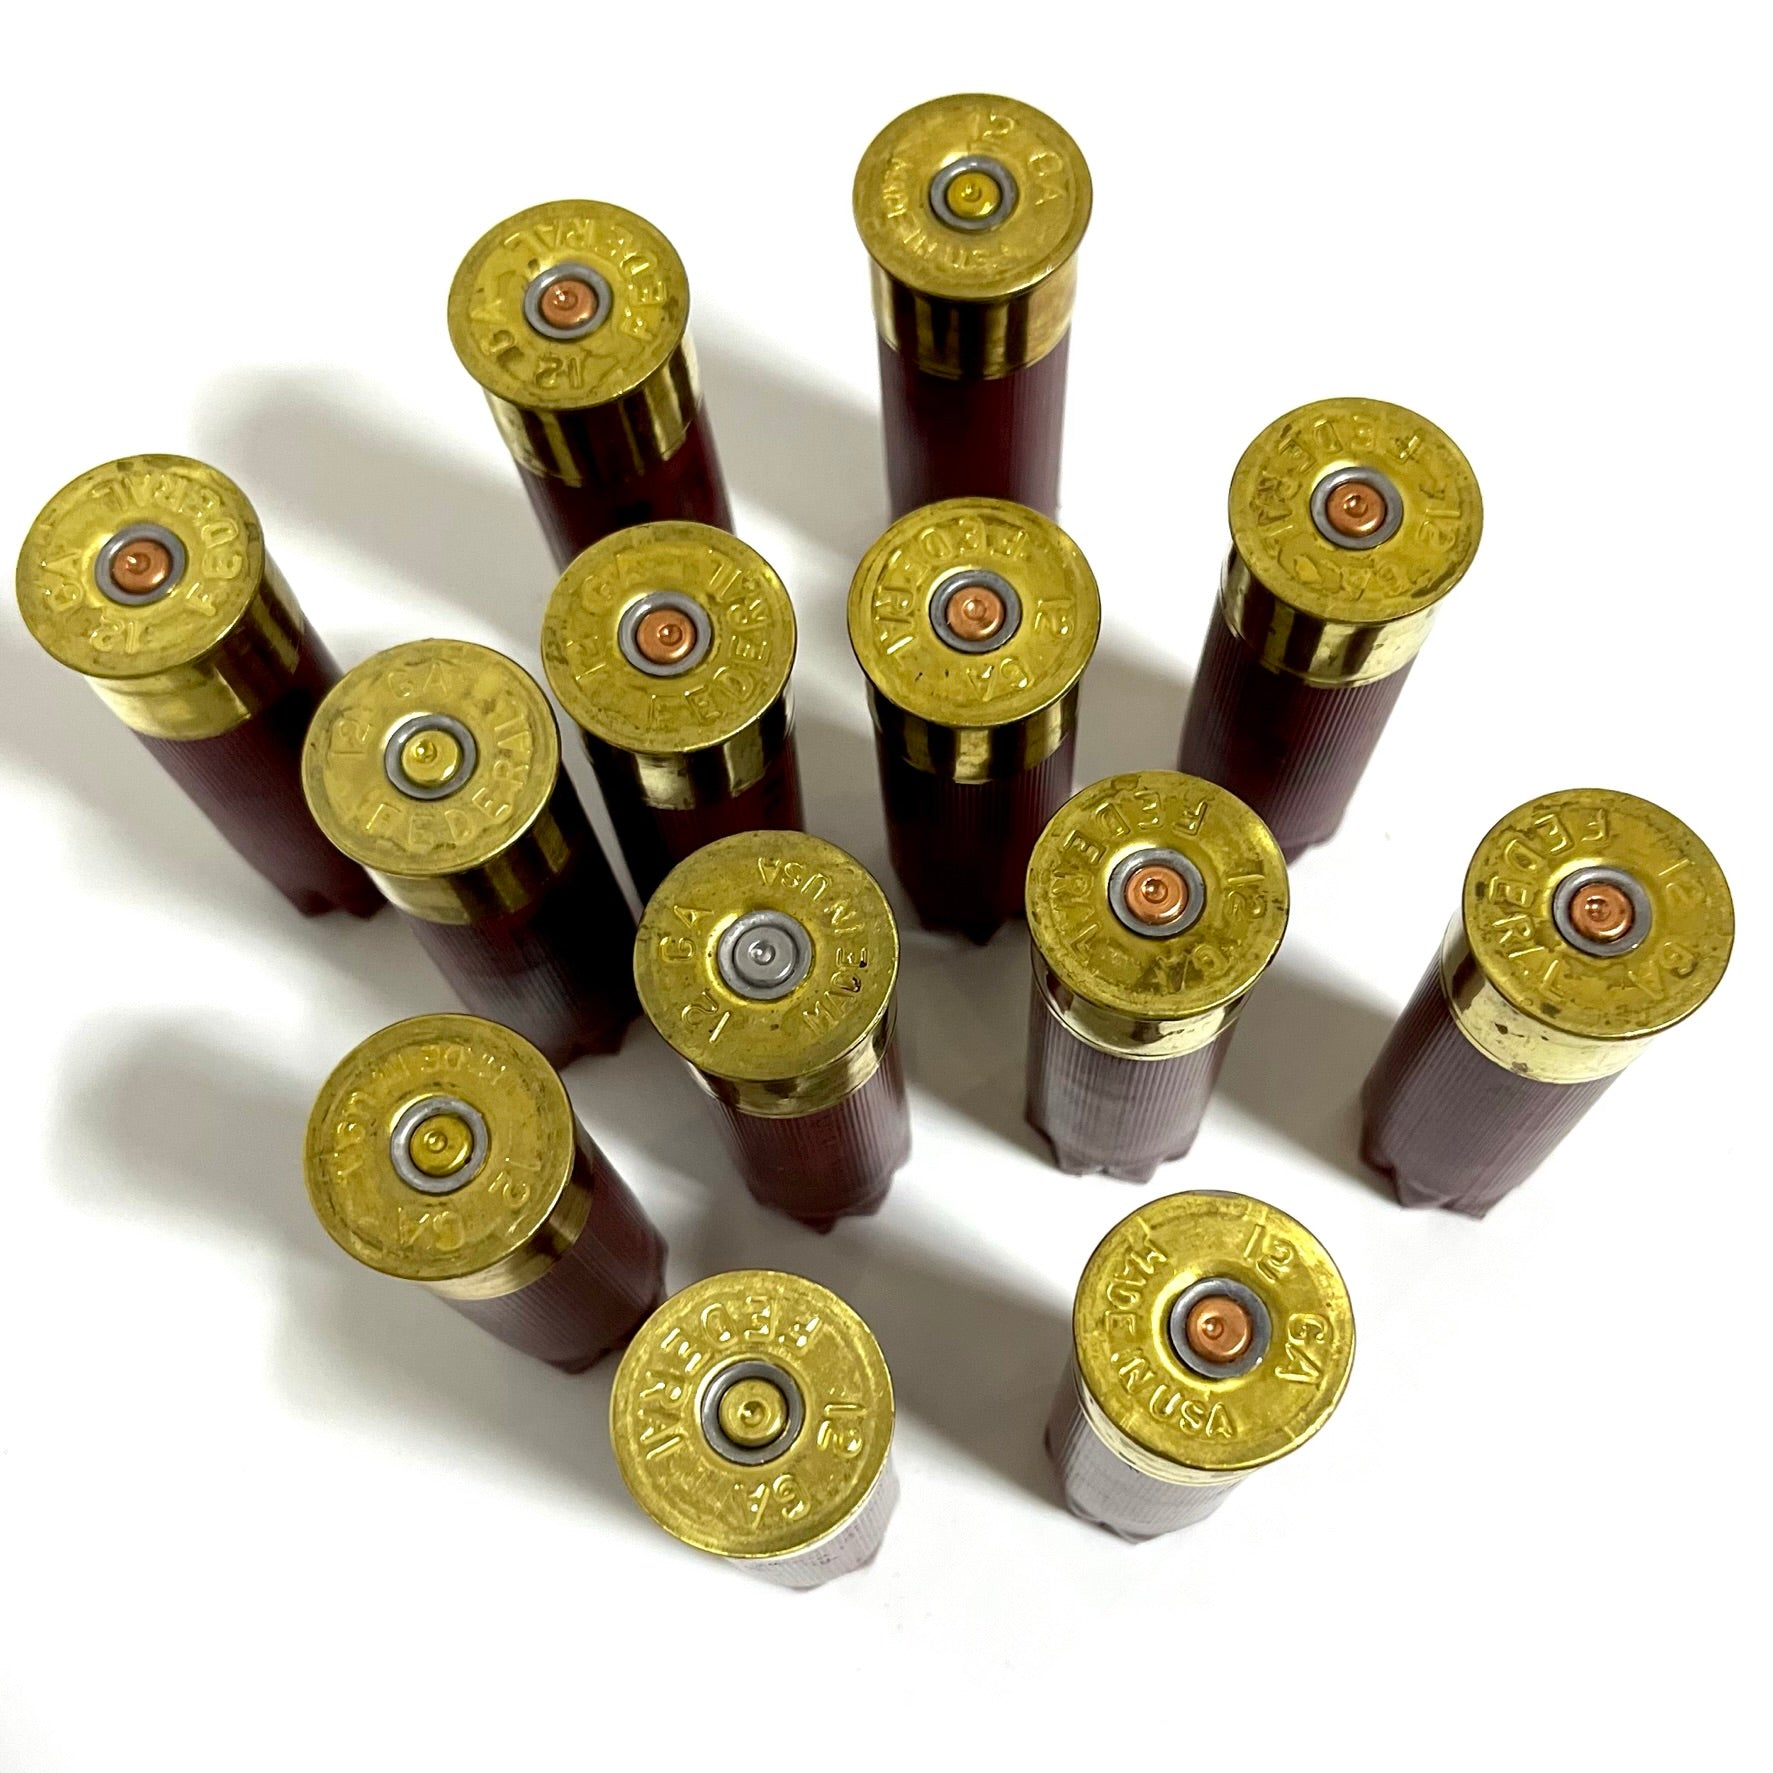 Federal Red High Brass Shotgun Shells 12 Gauge - Qty 100